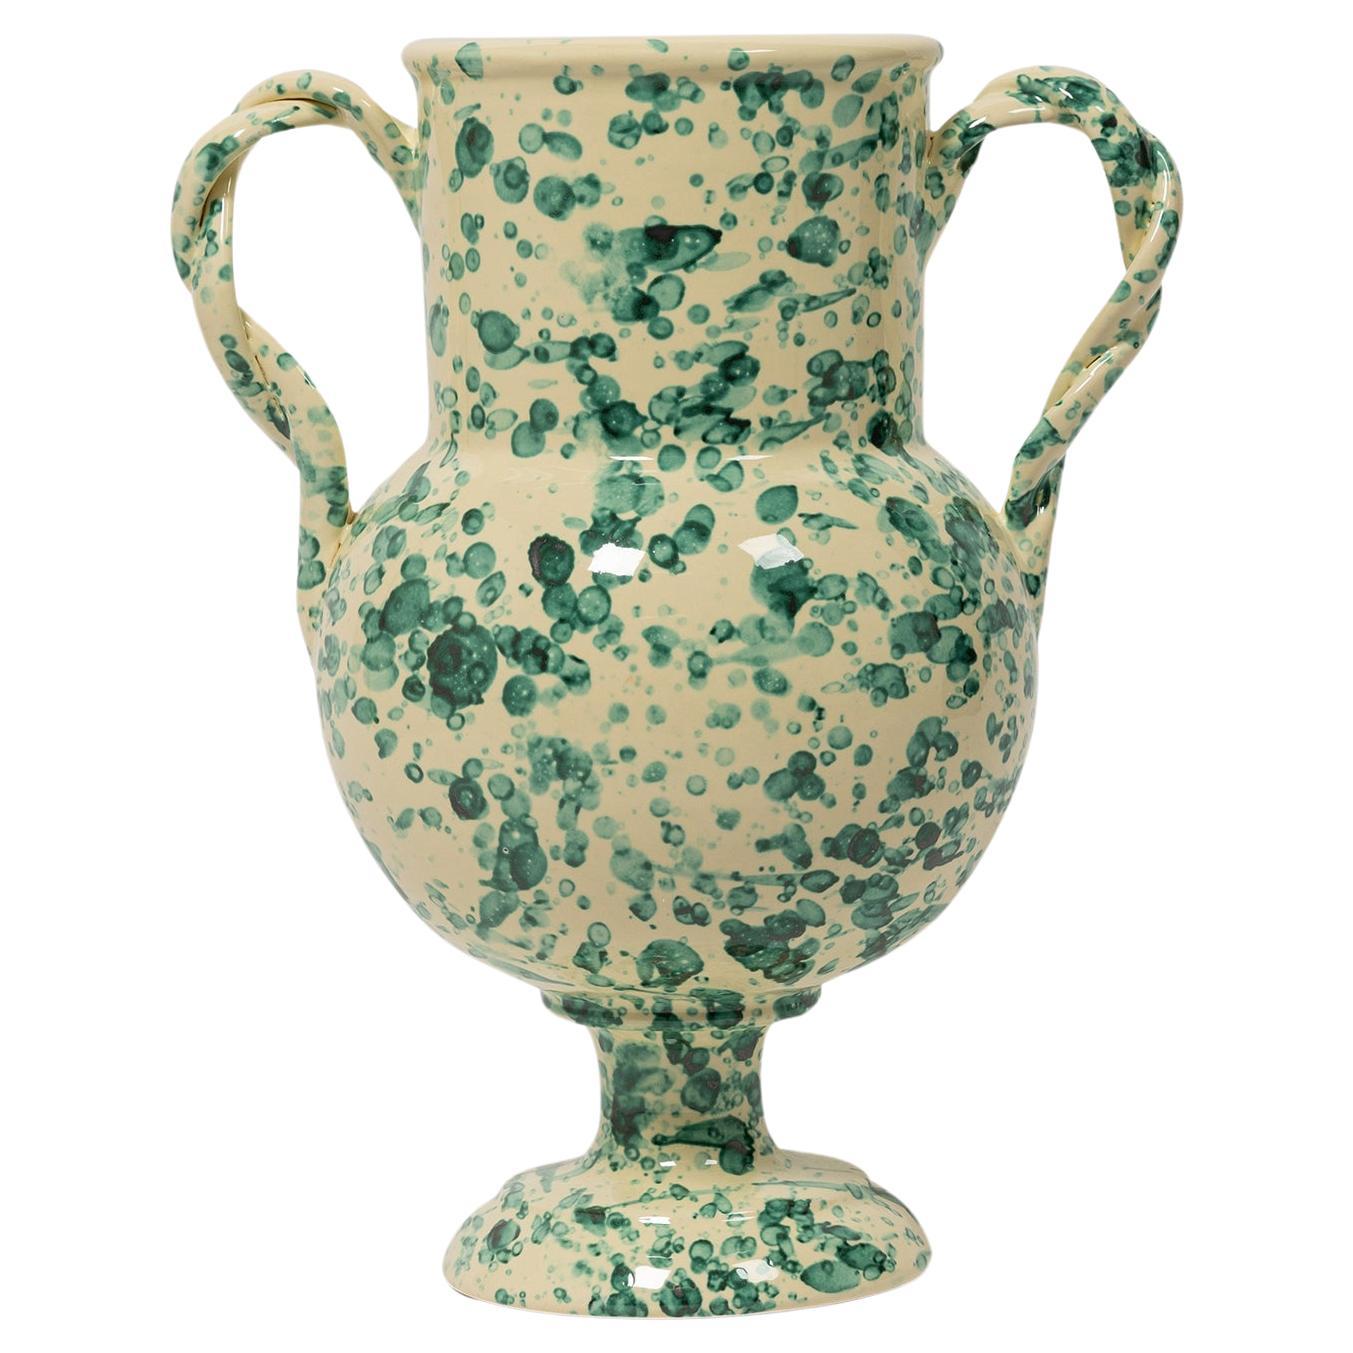 Splatter-Vase, Keramik, graue, von einer Urne inspirierte Vase, groß, grün 